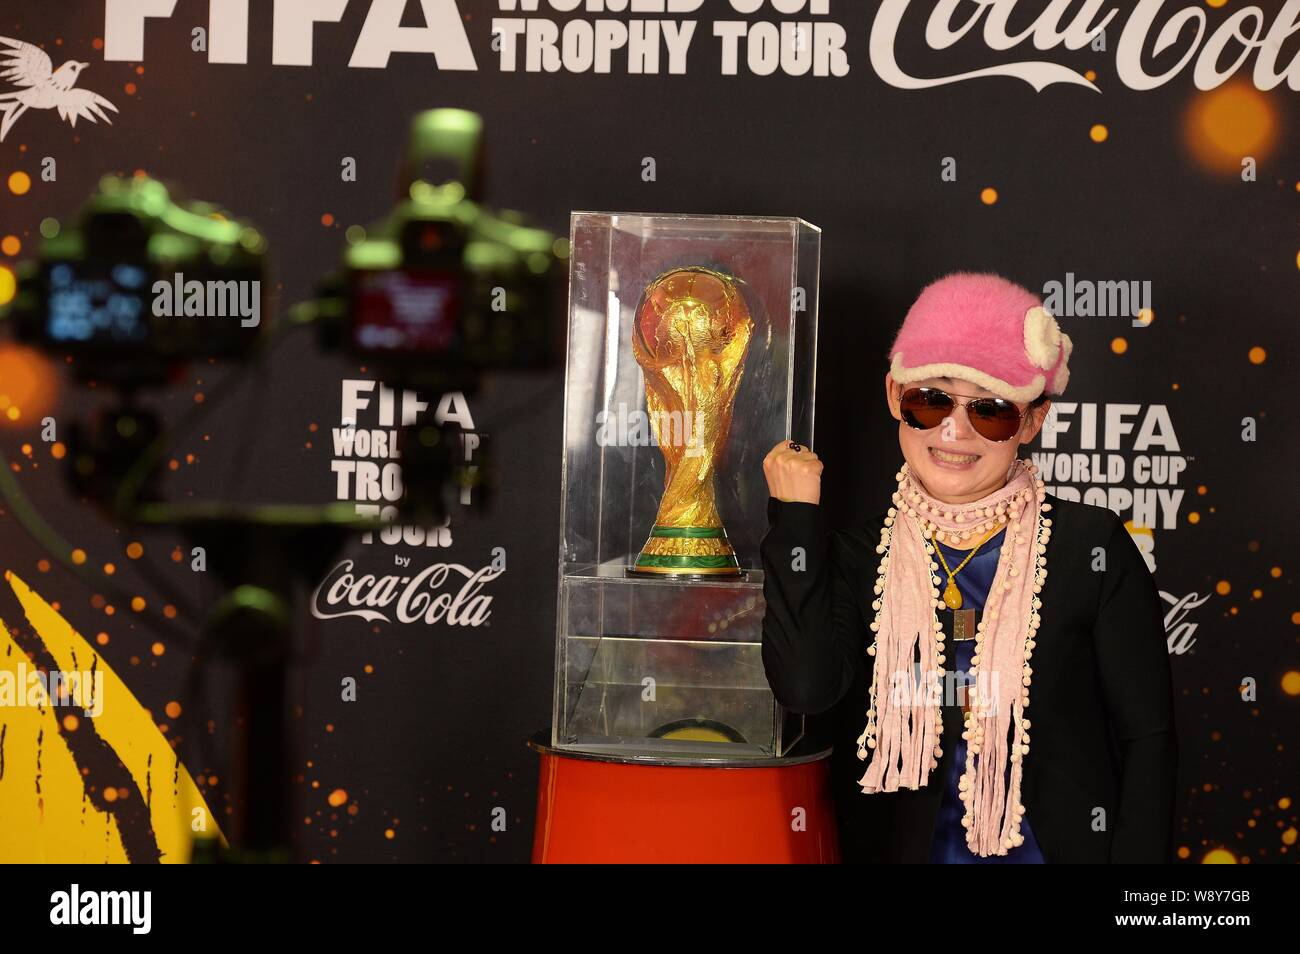 Un visiteur chinois pose avec une réplique de la FIFA Coupe du monde pendant la Coupe du Monde FIFA Trophy Tour à Shanghai, Chine, le 9 avril 2014. Banque D'Images